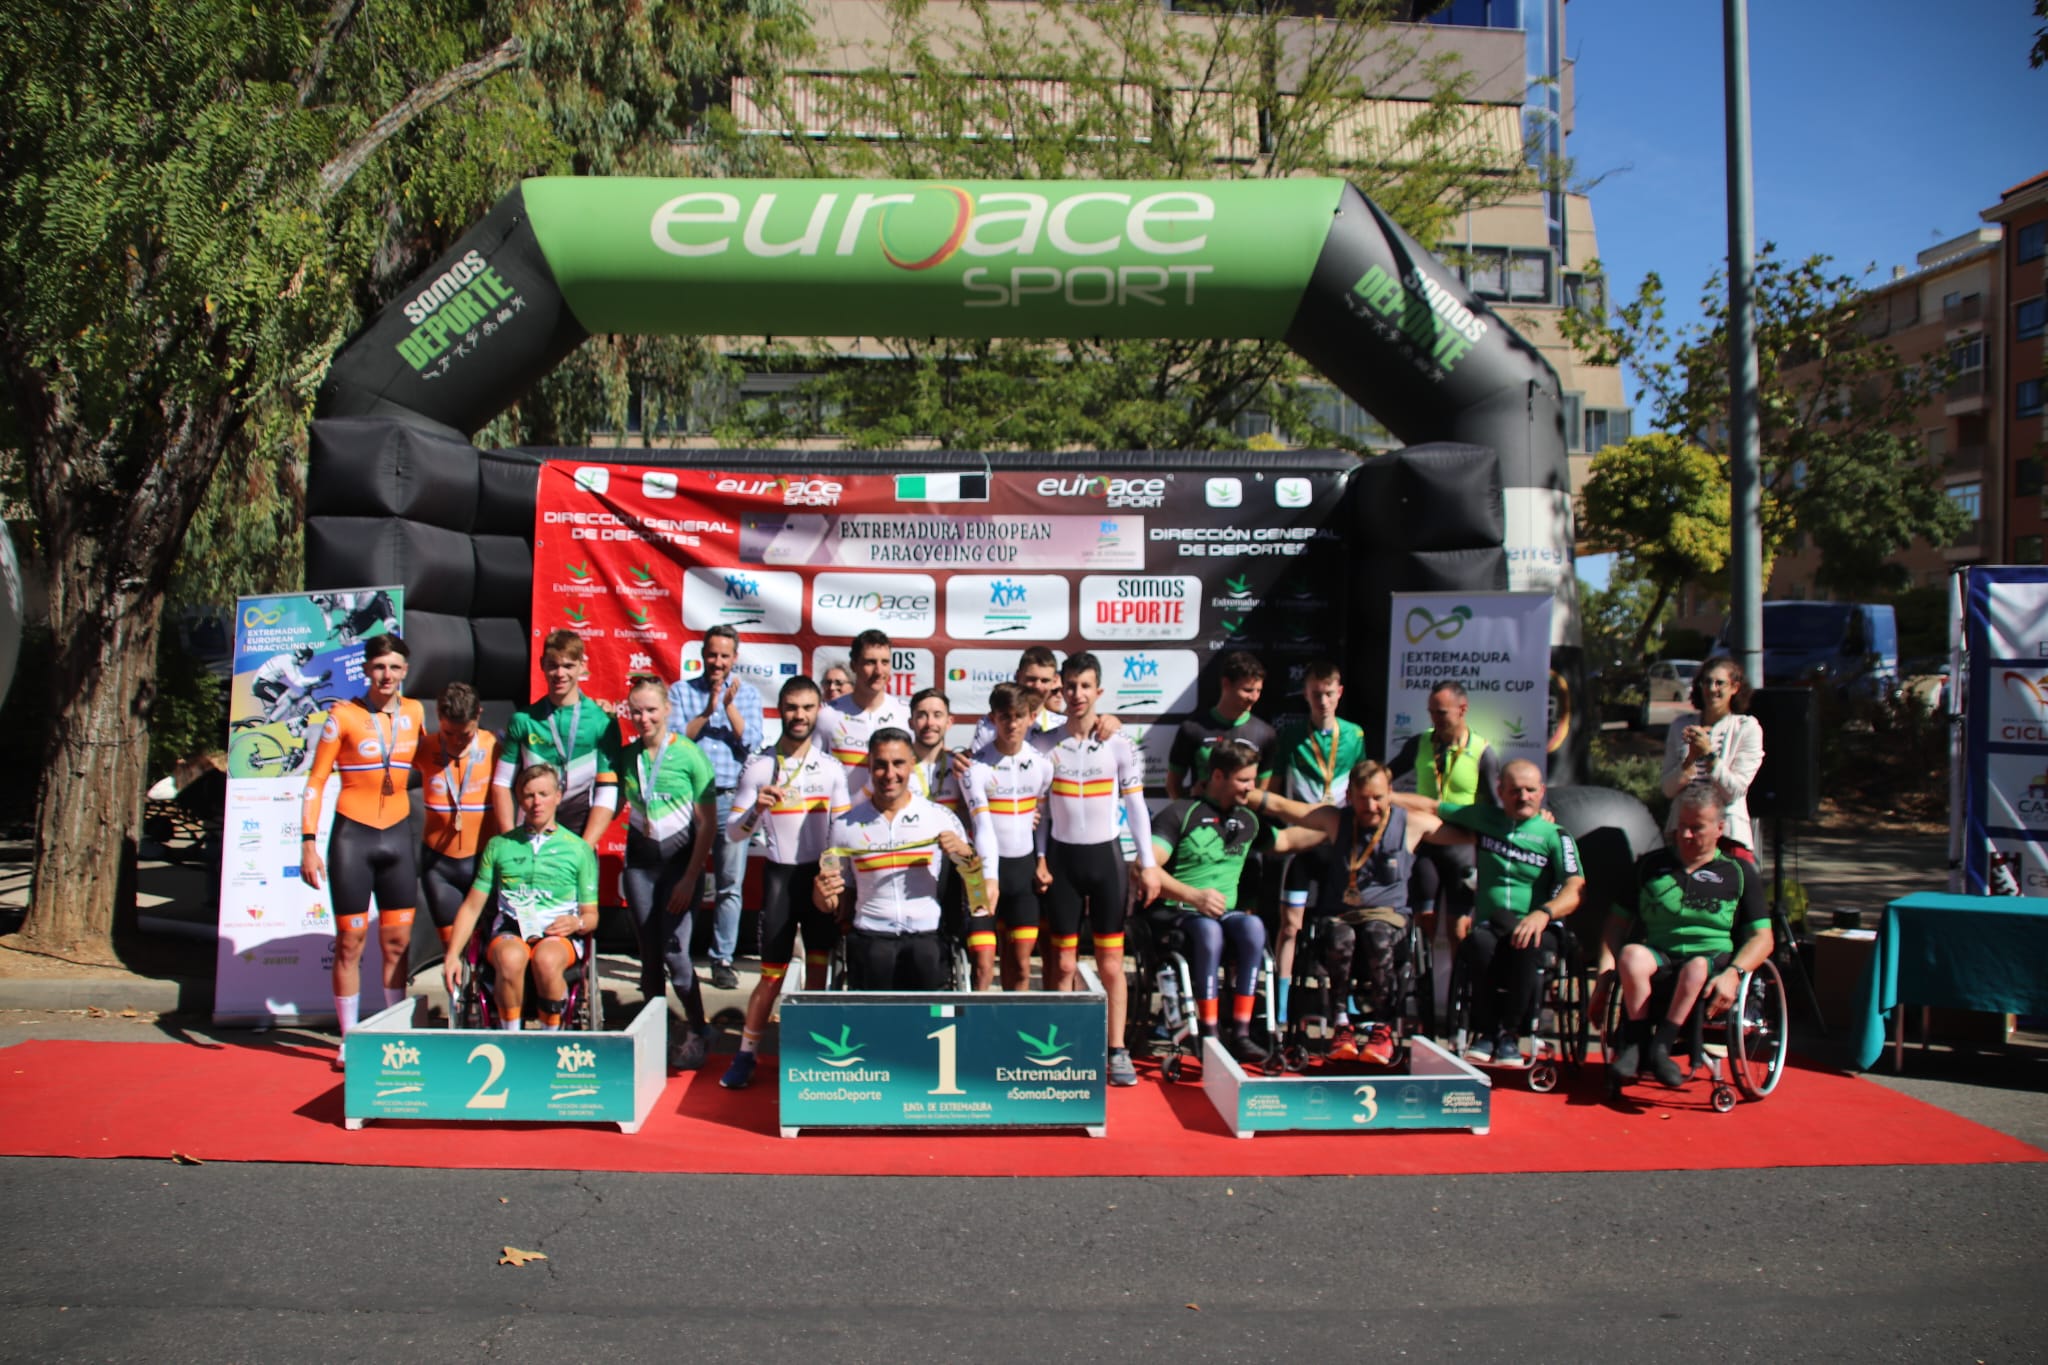 Una joven Selección Española se luce en la Extremadura European Paracycling Cup